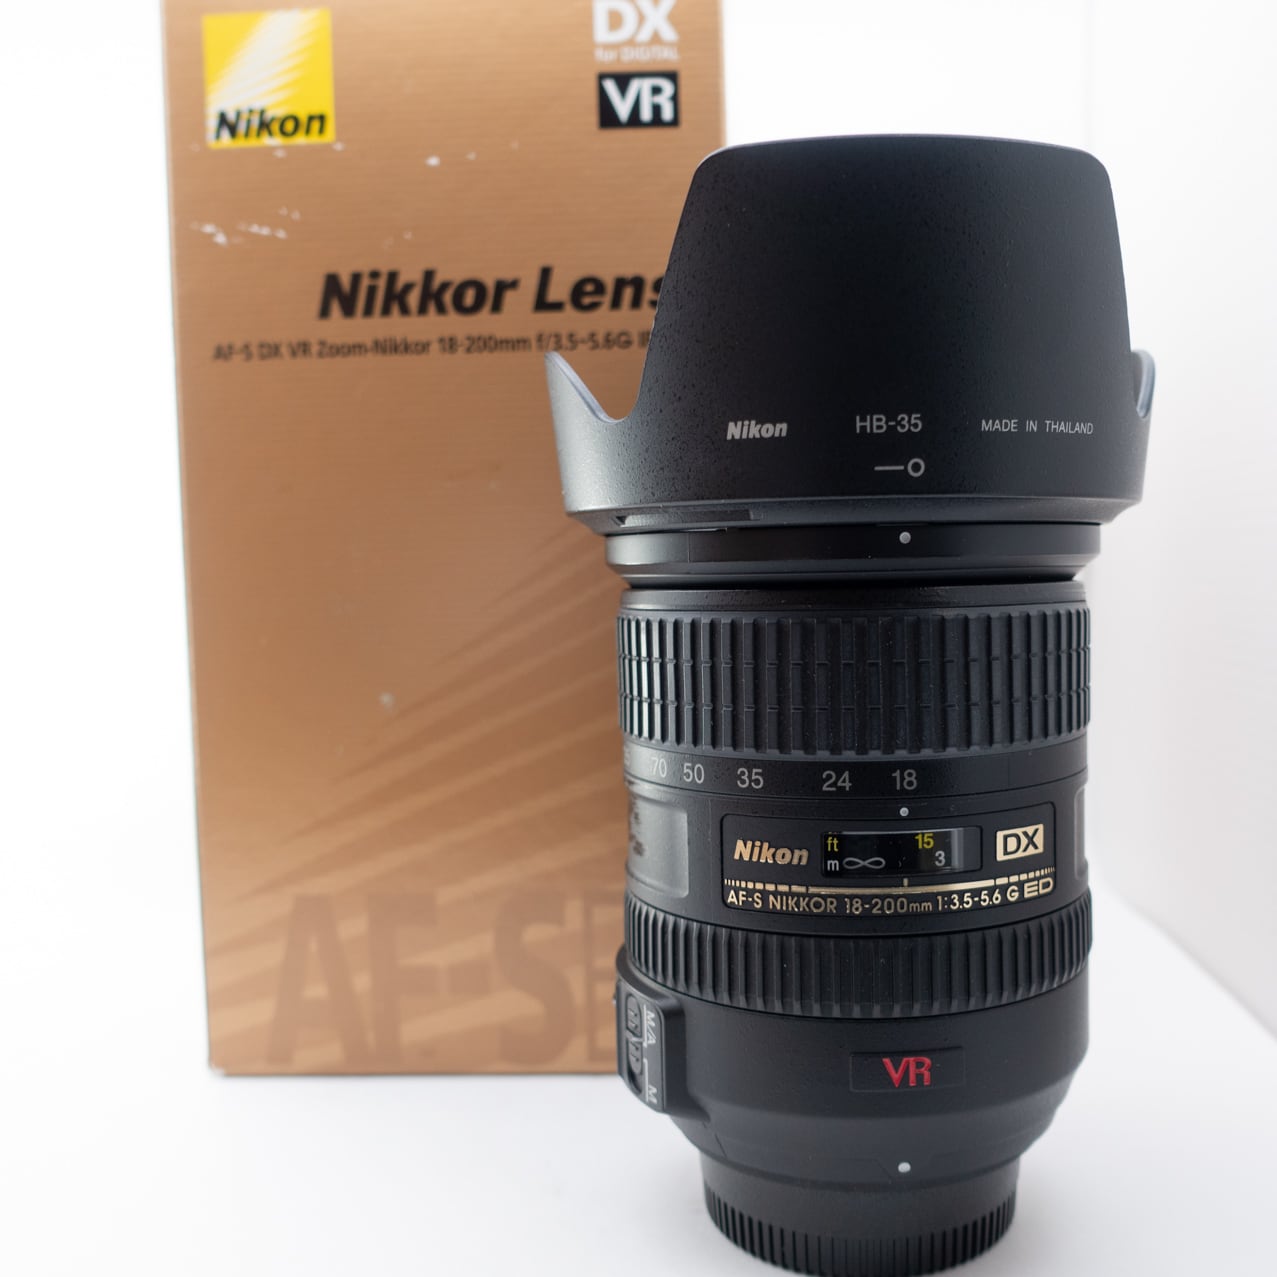 Nikon AF-S DX NIKKOR 18-200mm f/3.5-5.6G ED VR Zoom Lens from JAPAN #0125 |  JJ-RISE powered by BASE